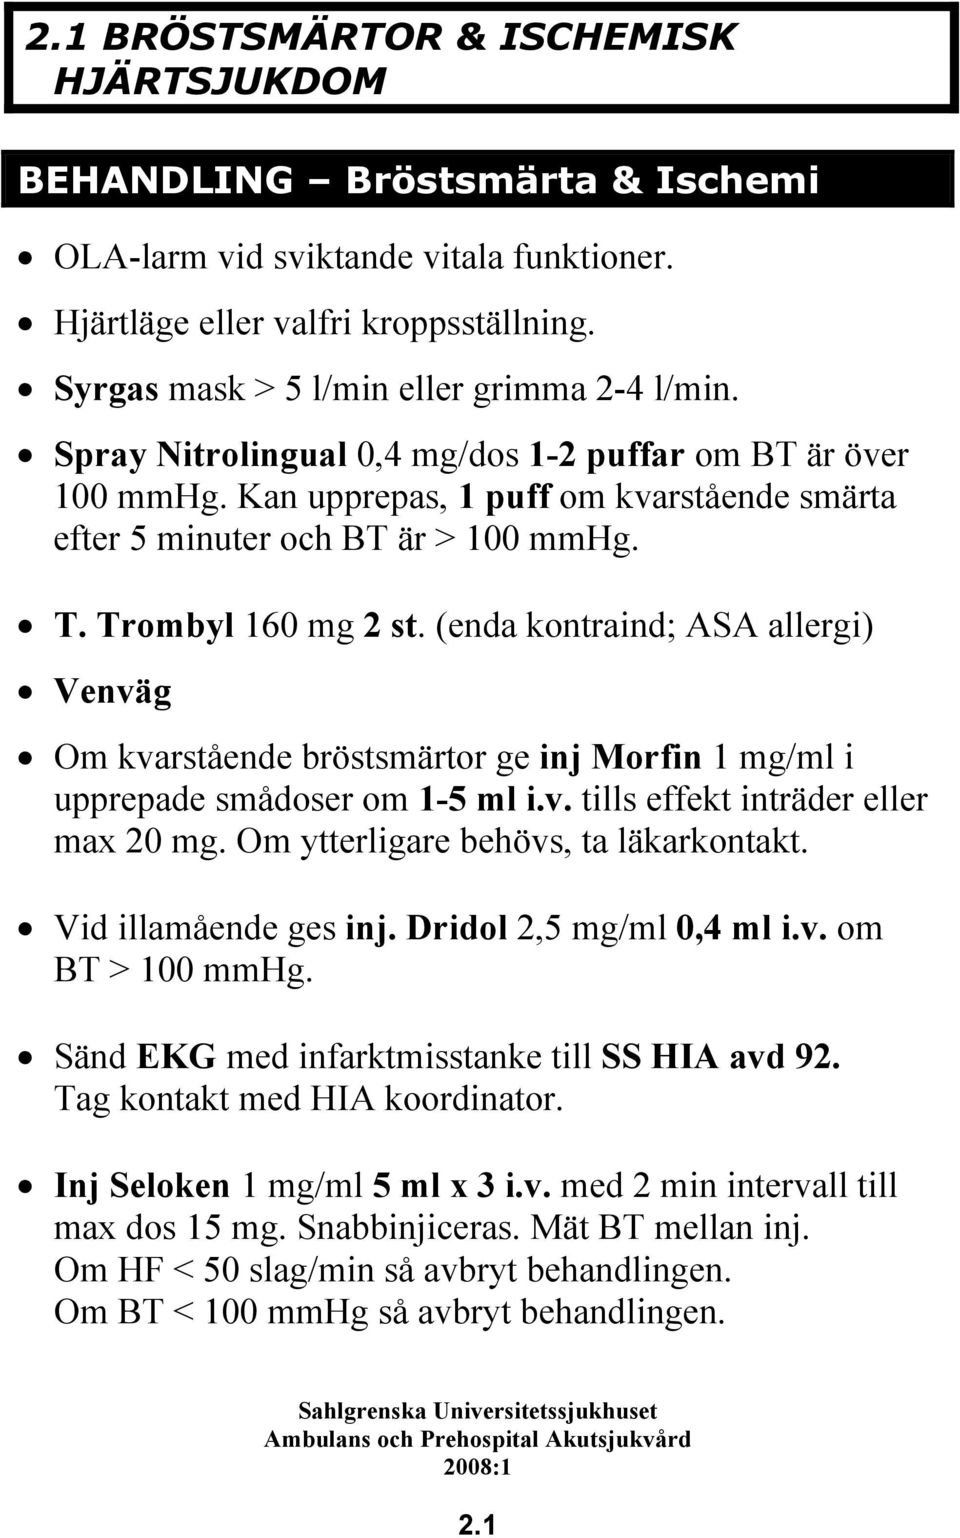 Trombyl 160 mg 2 st. (enda kontraind; ASA allergi) Venväg Om kvarstående bröstsmärtor ge inj Morfin 1 mg/ml i upprepade smådoser om 1-5 ml i.v. tills effekt inträder eller max 20 mg.